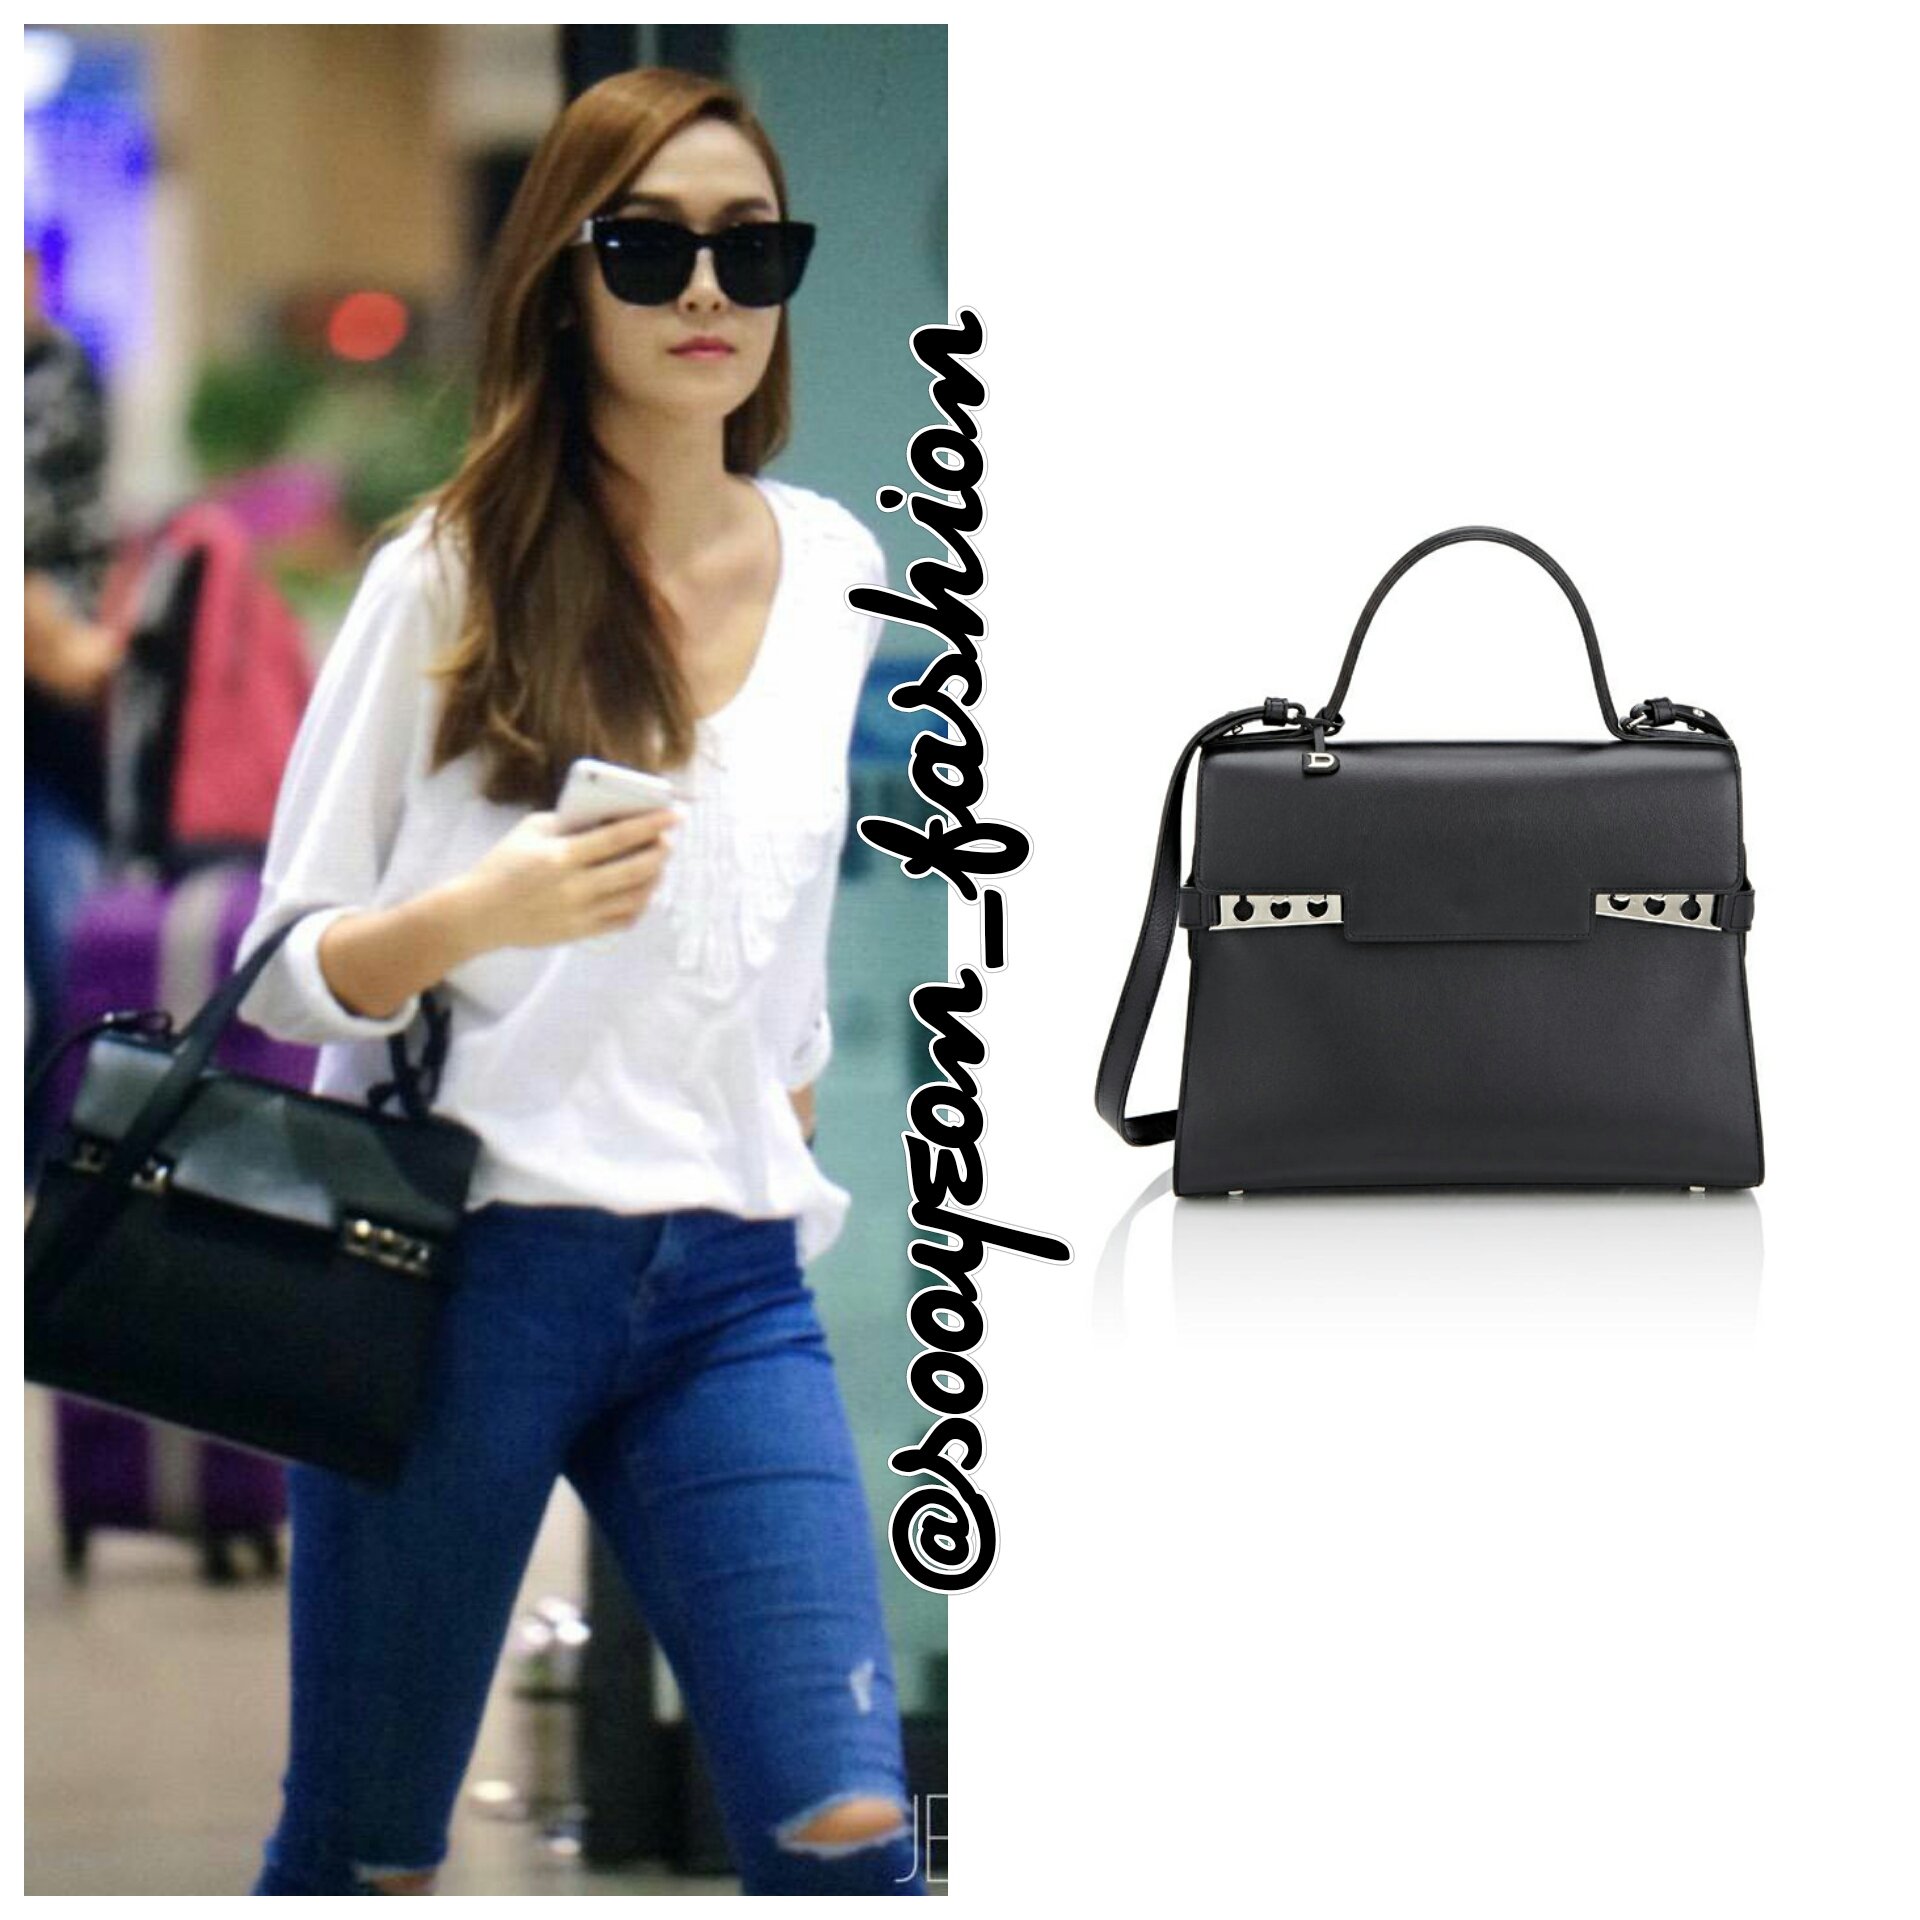 X 上的jsy fashion：「150519 Incheon Airport DELVAUX: Tempête GM Satchel Bag ( Black), $7.100  #JessicaJung #sicasairportfashion   / X